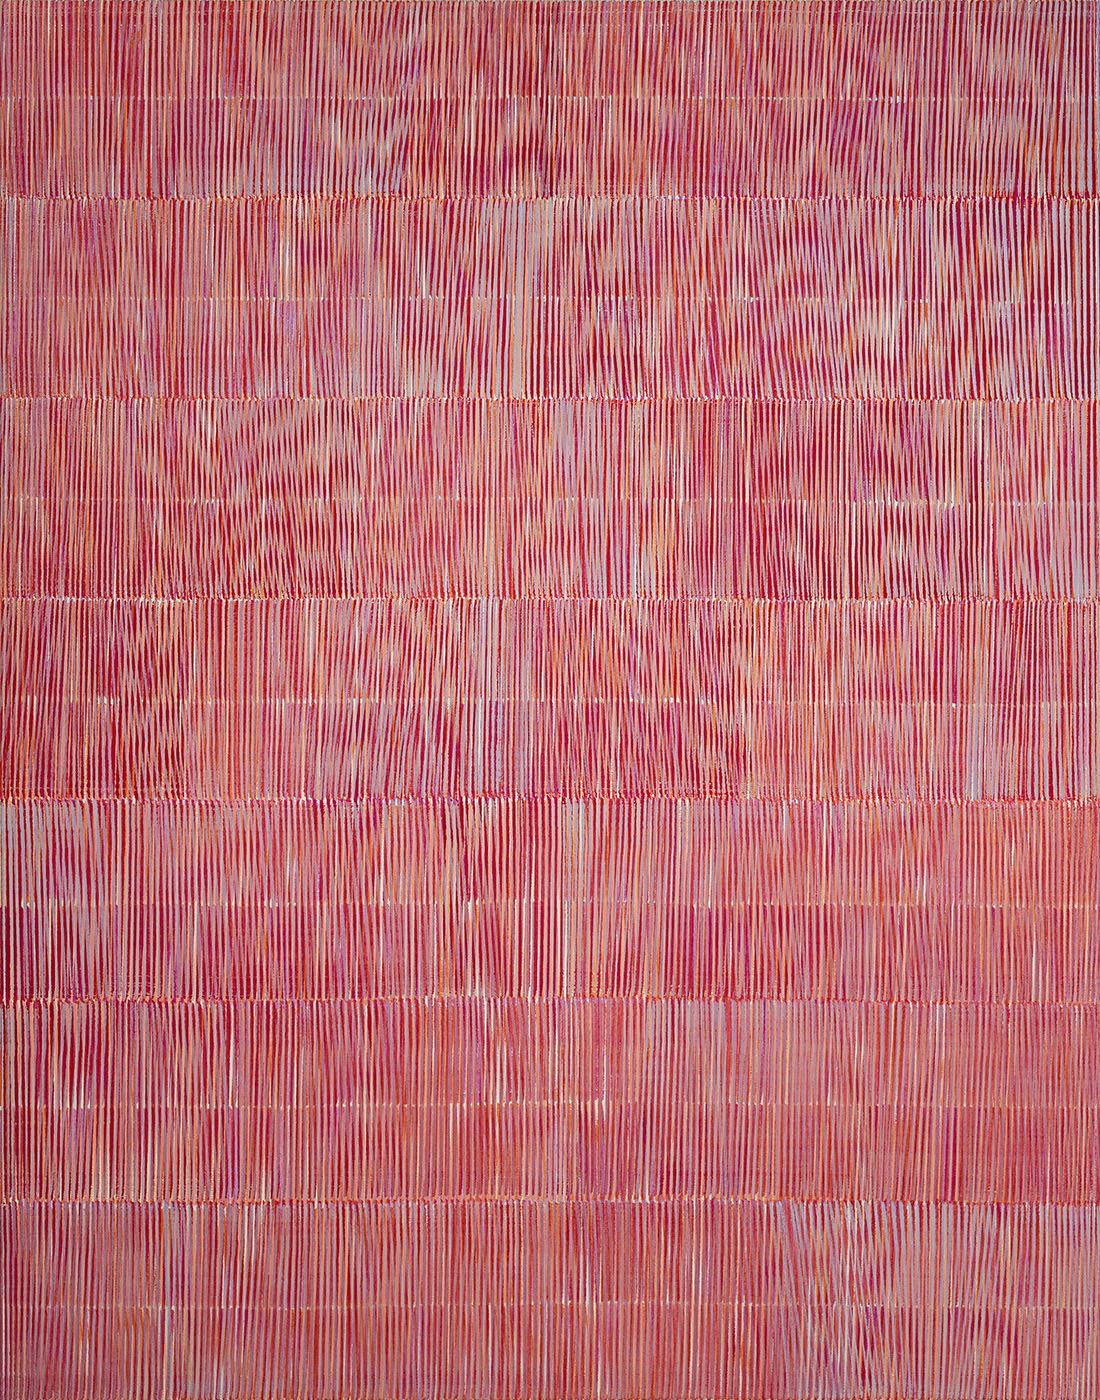 Nikola Dimitrov, Rhythmen Rot I, 2023, Pigmente, Bindemittel auf Leinwand, 140 × 110 cm